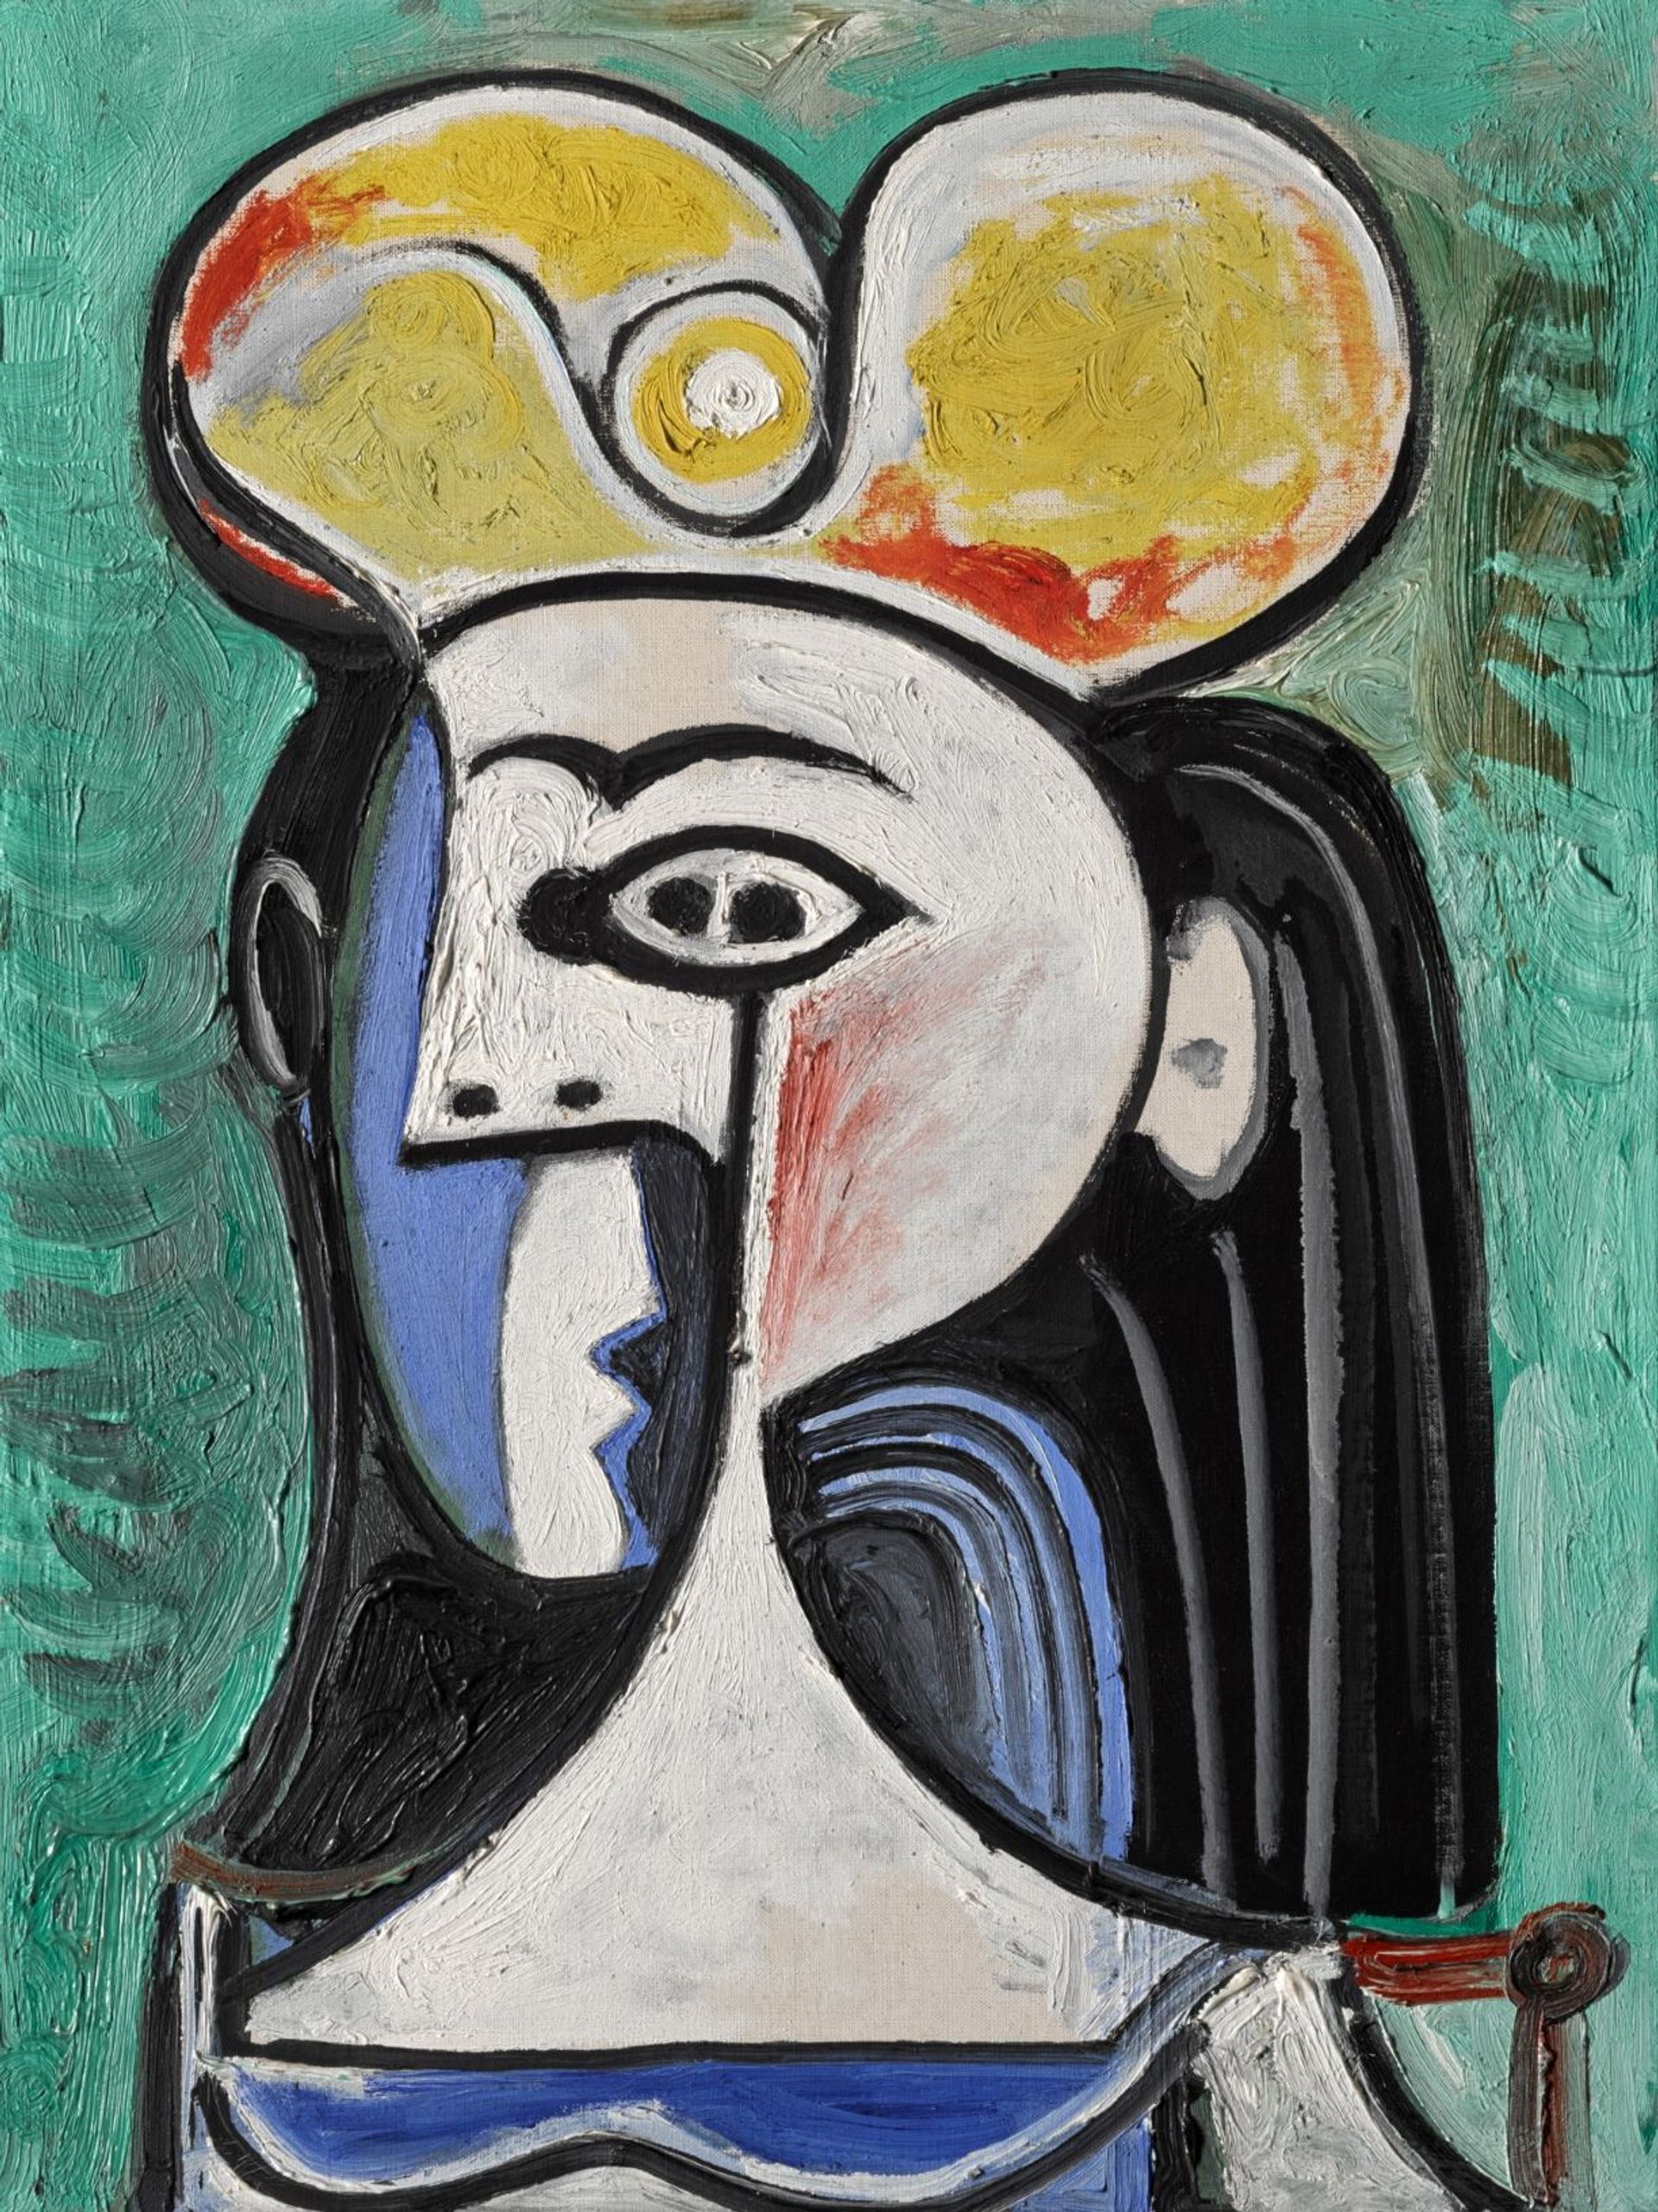 Pablo Picasso, Buste de femme assise, 1962, huile sur toile. Est. 8-12 millions d’euros. © Sotheby’s